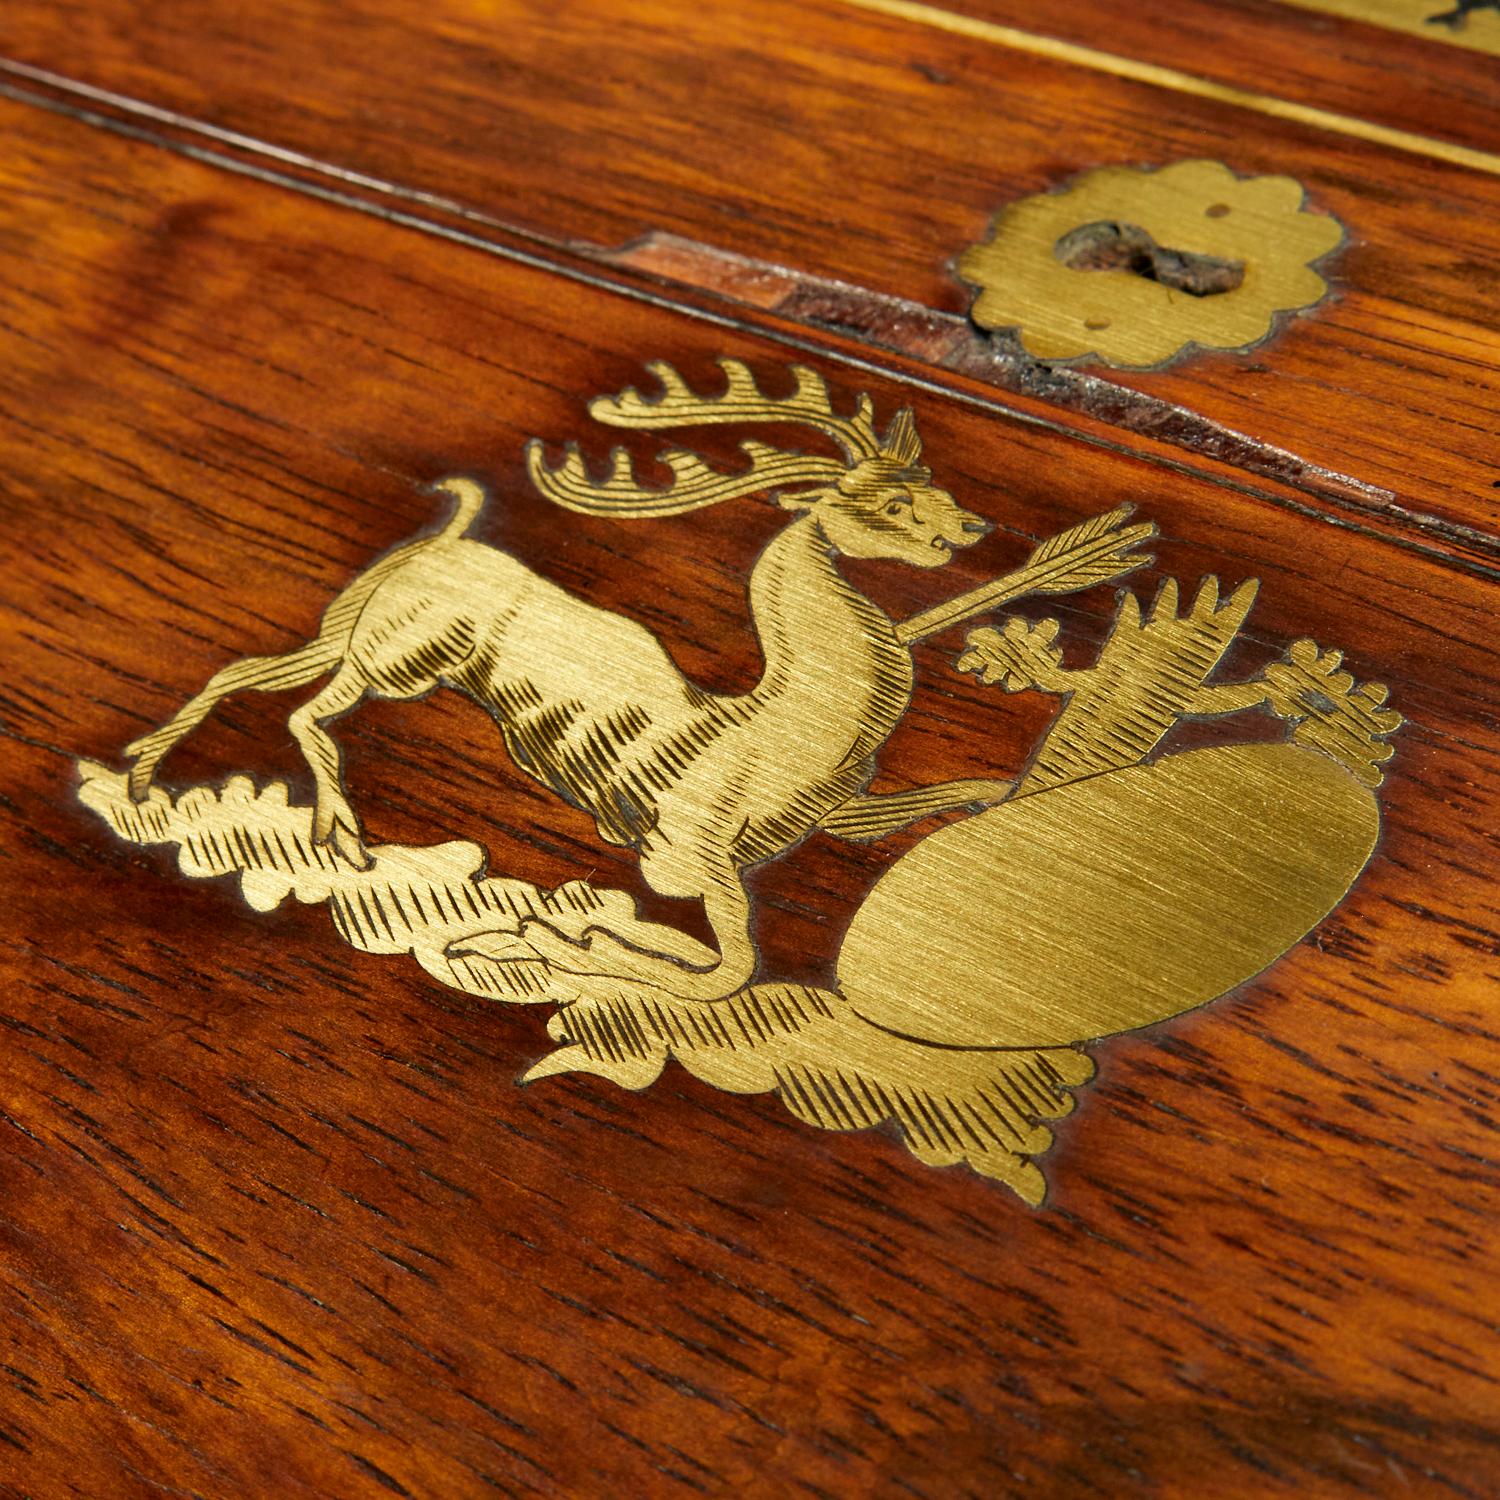 c.1800, Angleterre, bureau de style Régence en bois de rose incrusté de laiton, à la manière de George Bullock. Boîte rectangulaire avec couvercle à double charnière, s'ouvrant sur une surface d'écriture en cuir marine estampé et gaufré d'or et sur